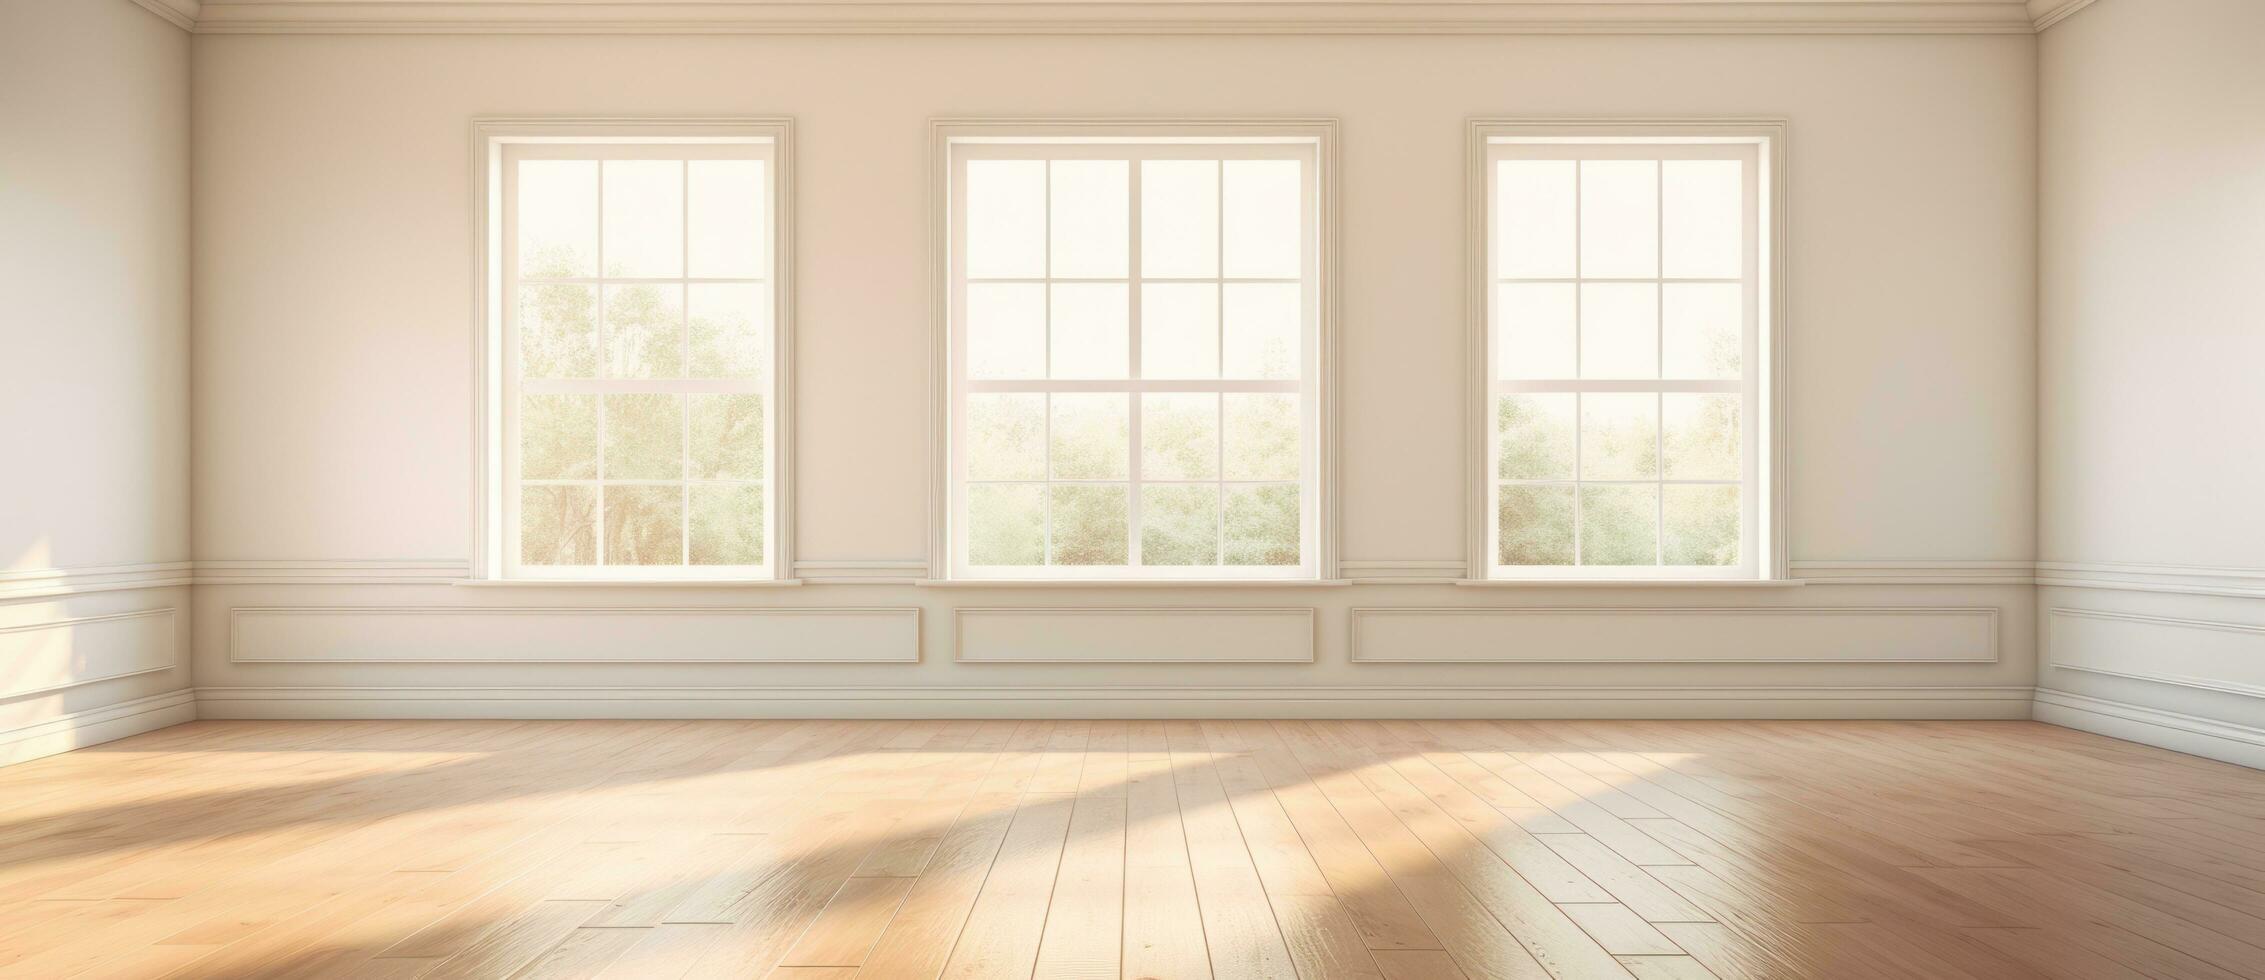 Empty room with bog window and wooden floor photo